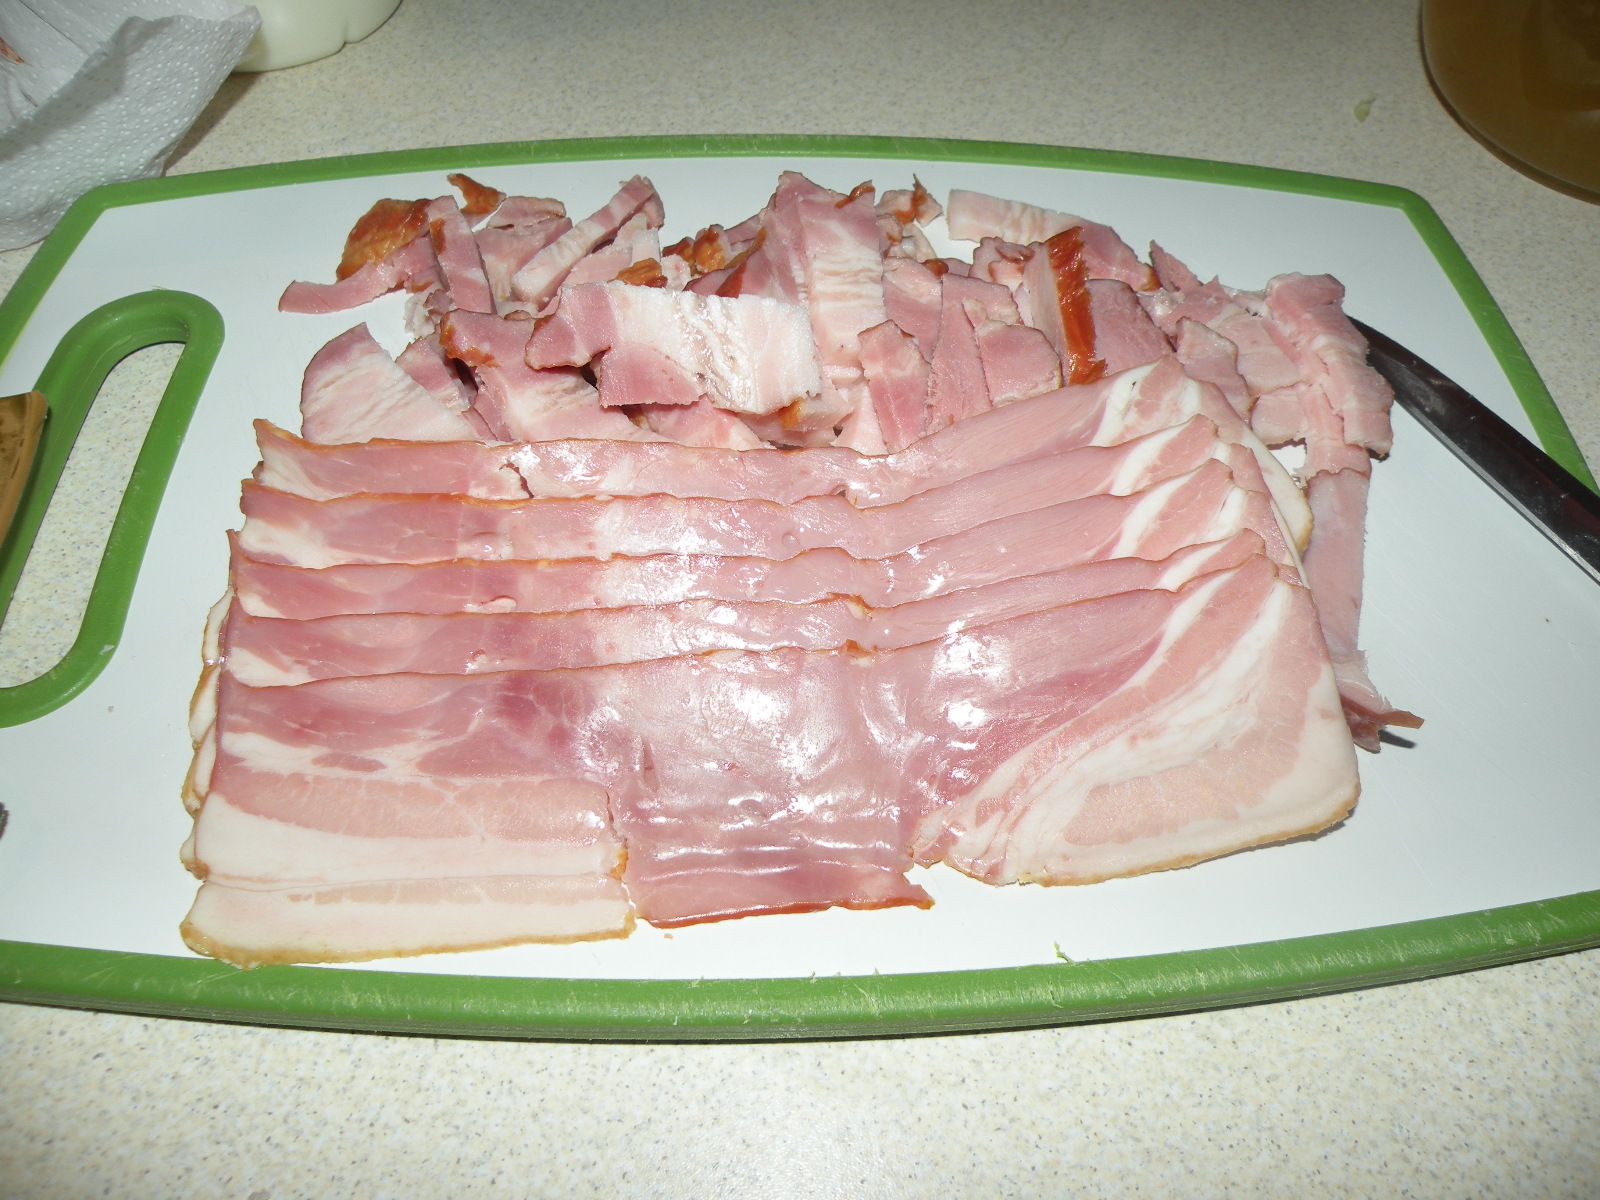 Ciorba de salata verde cu kaiser si bacon